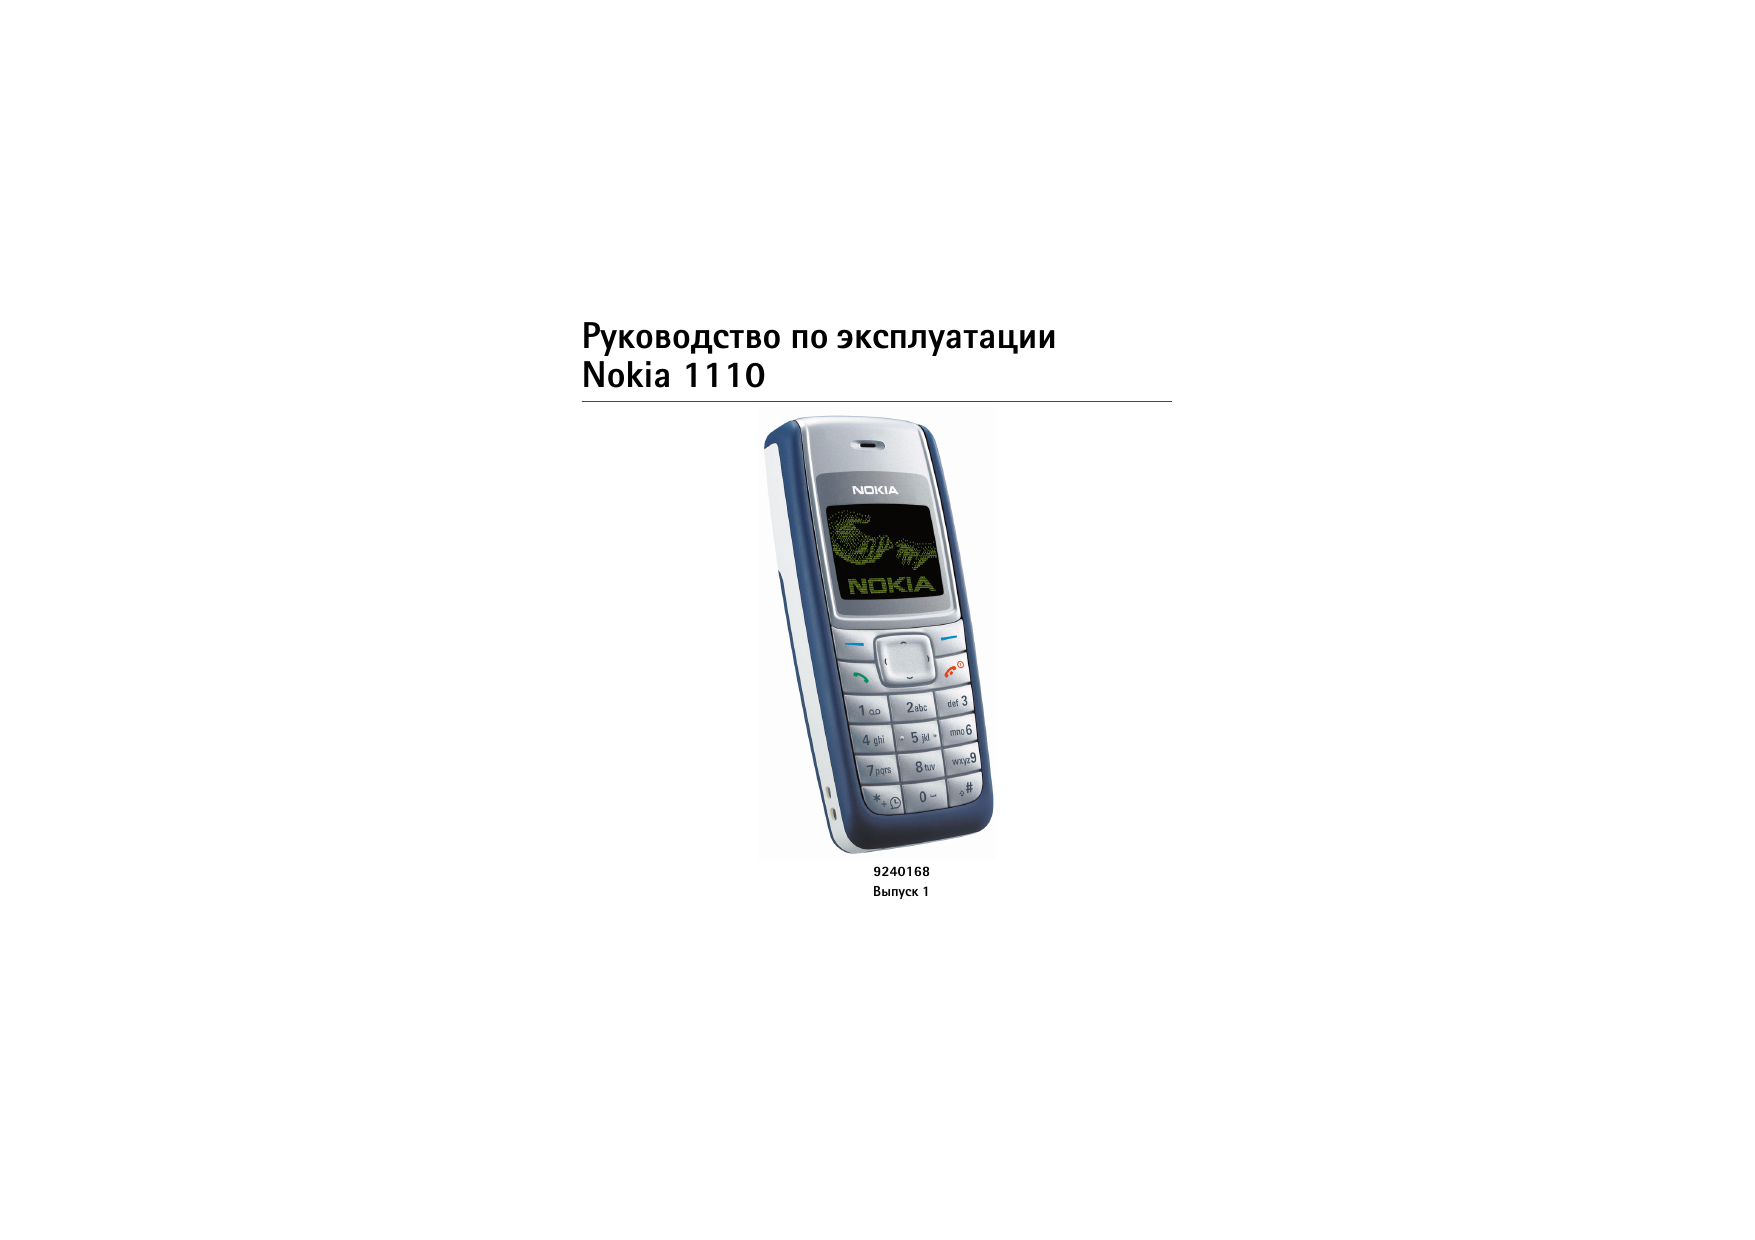 Телефоны нокиа инструкция. Nokia 1110 rh-70. Нокия 1110 характеристики. Nokia кнопочный 1110. Телефон нокия кнопочный инструкция по применению.